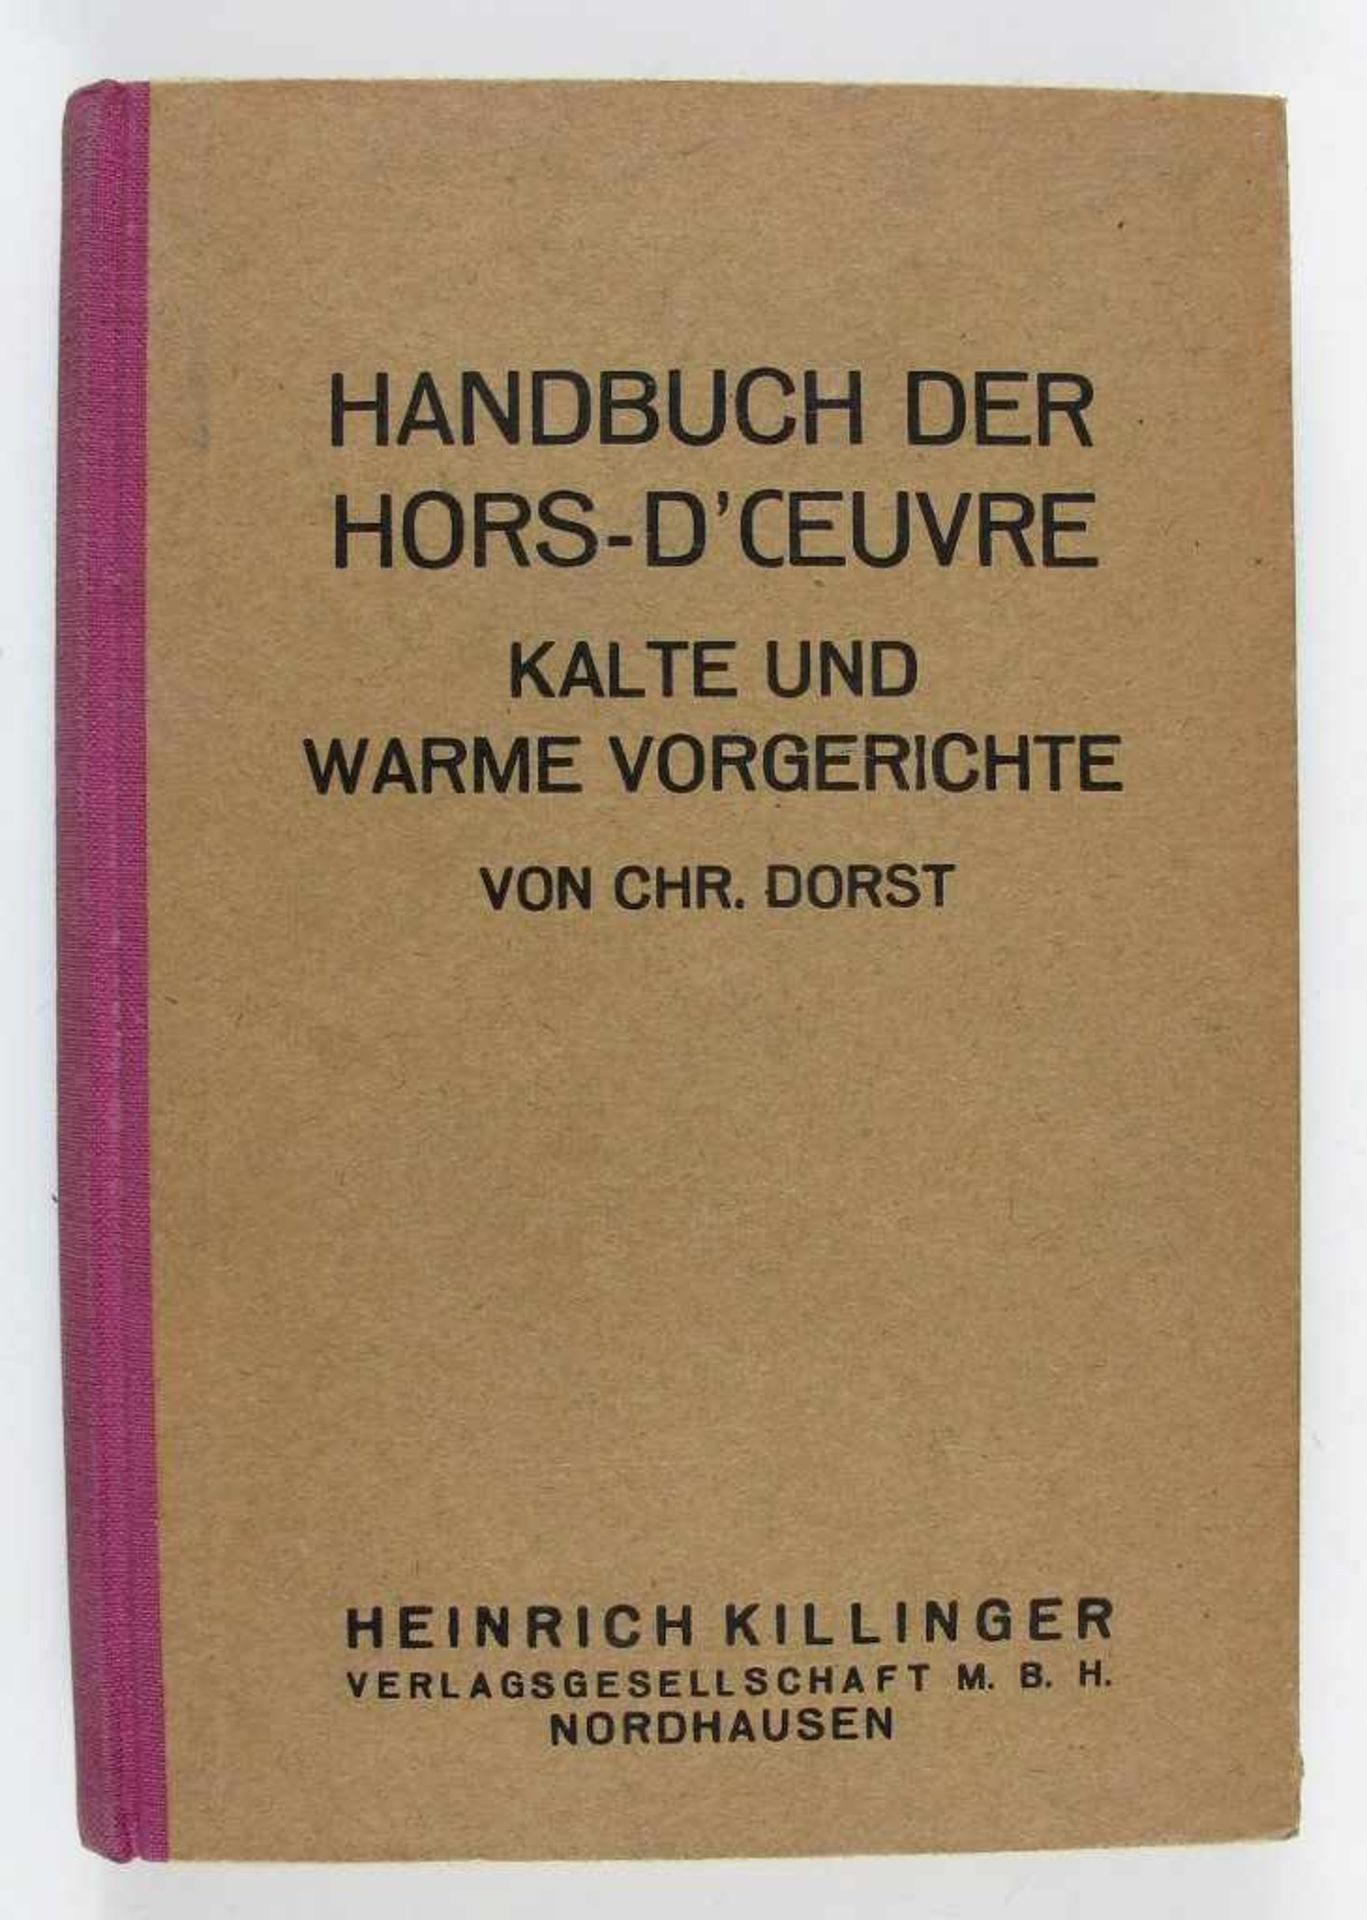 Kochbuch: Dorst, Christoph. Handbuch der Hors-d'Oeuvre. Kalte und warme Vorgerichte. 5.Aufl.